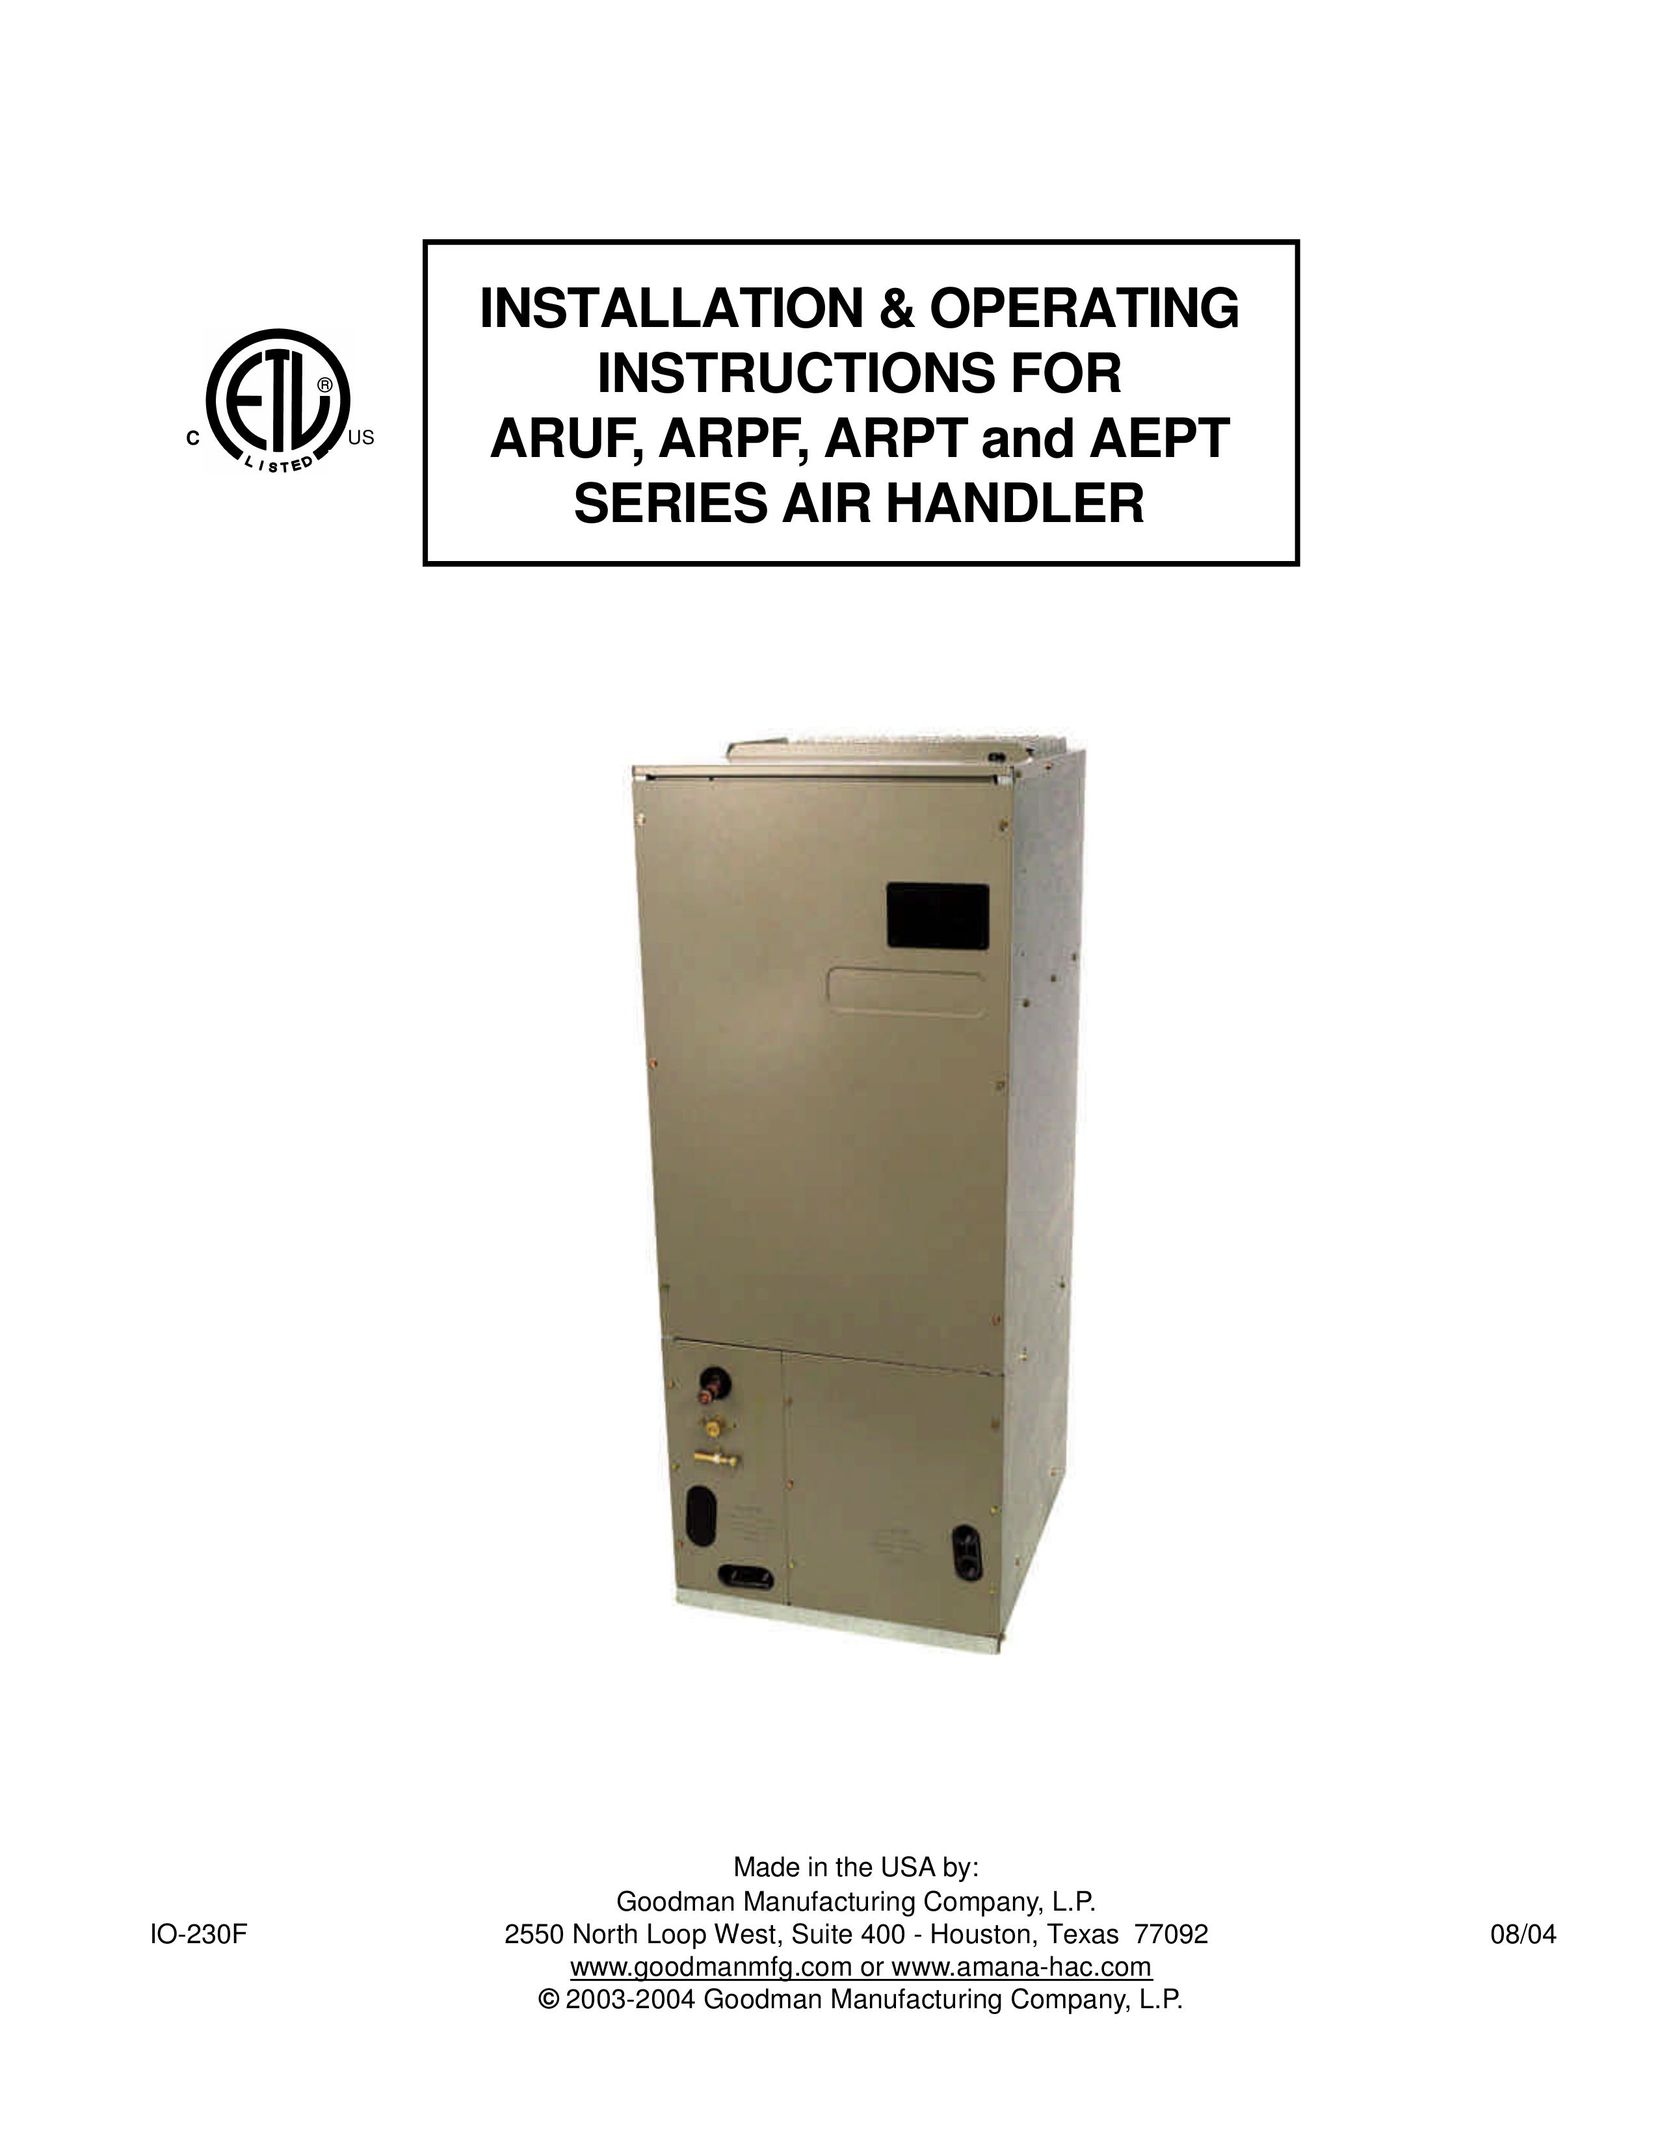 Goodman Mfg AEPT Air Conditioner User Manual